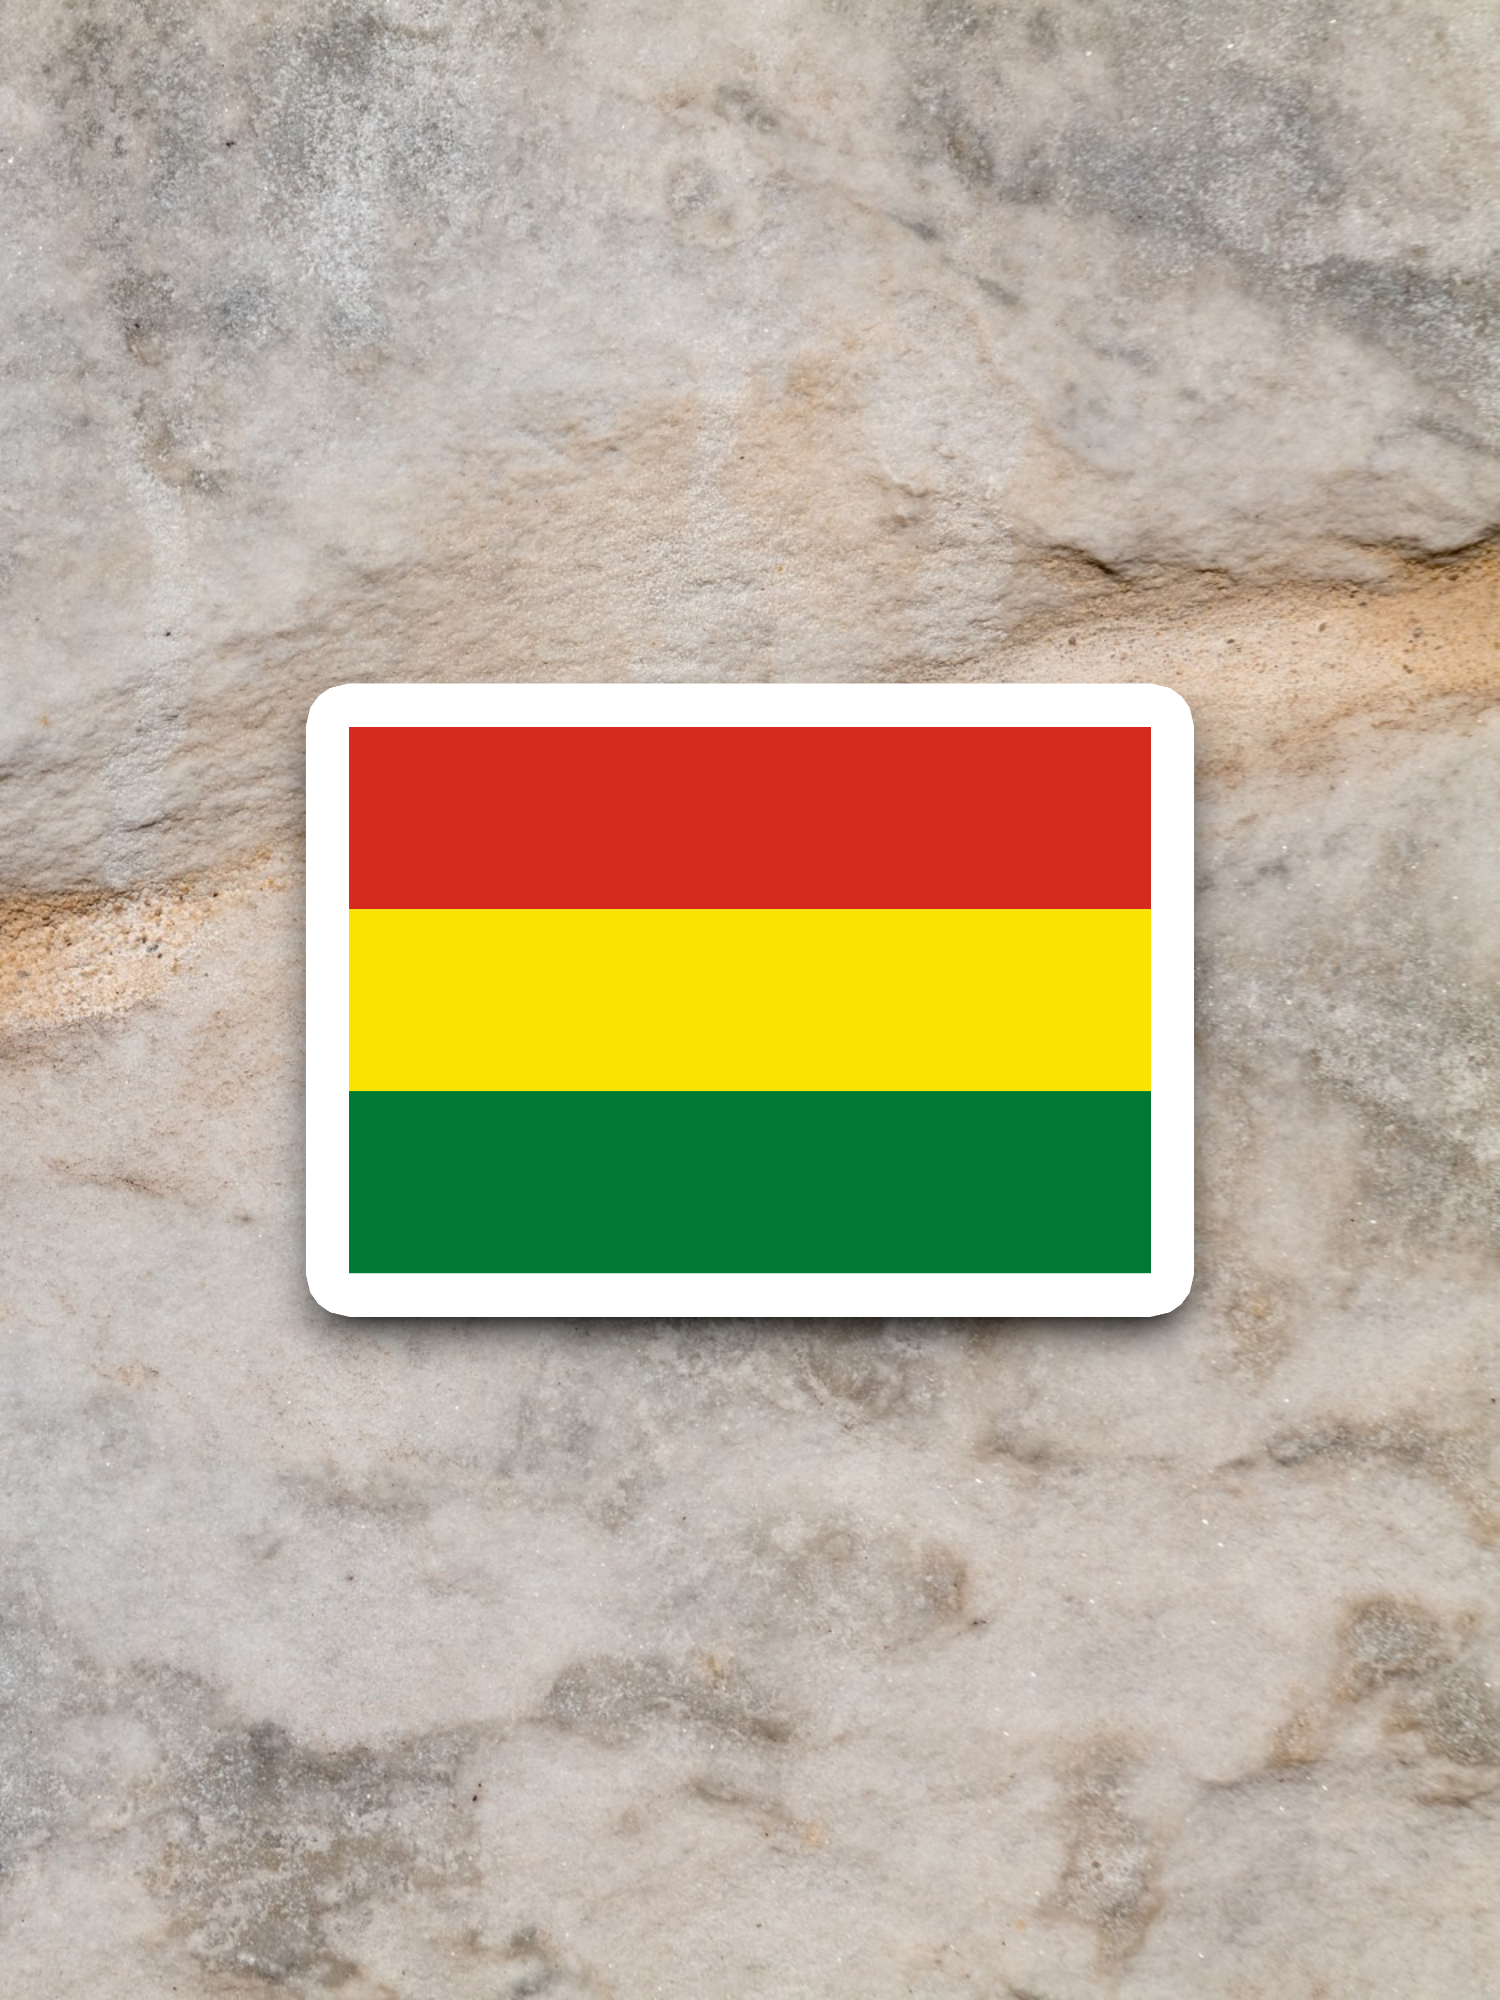 Bolivia Flag - International Country Flag Sticker